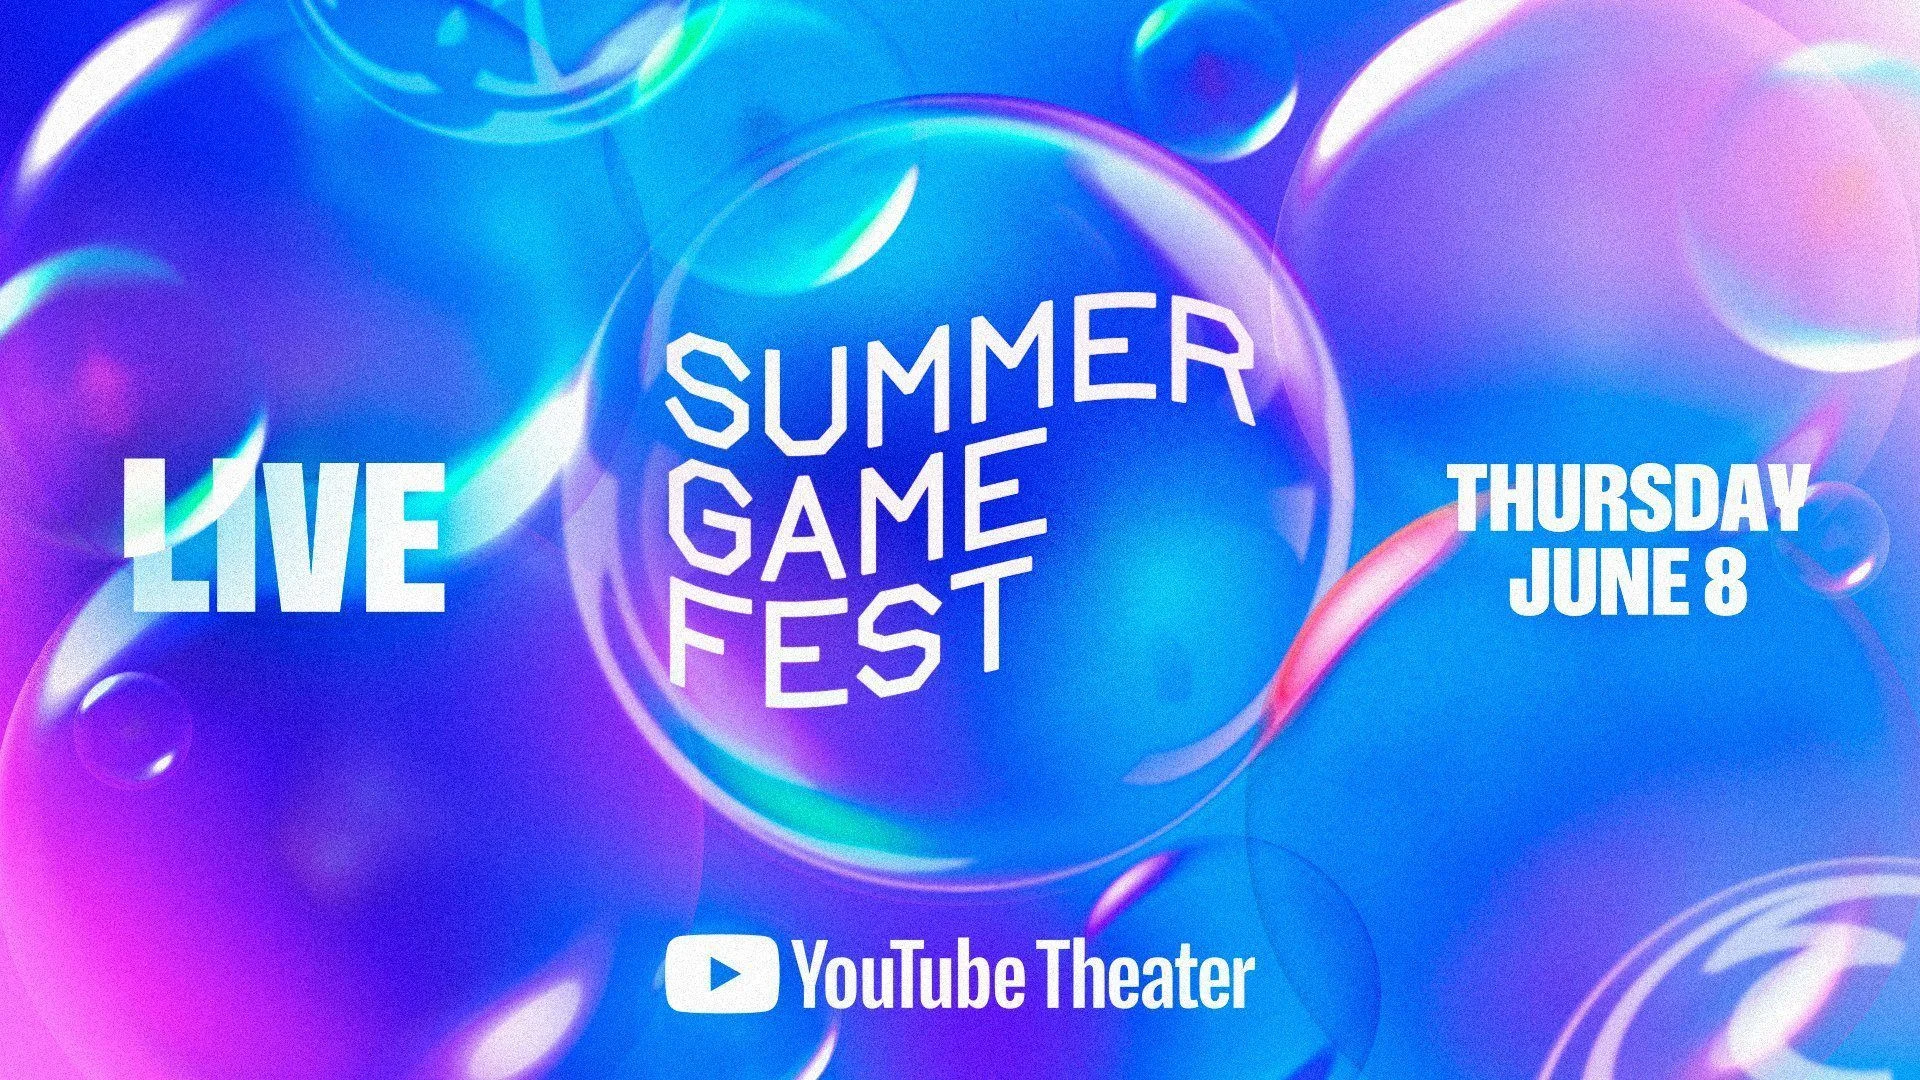 Summer Game Fest начнётся 8 июня с «живого» шоу - фото 1